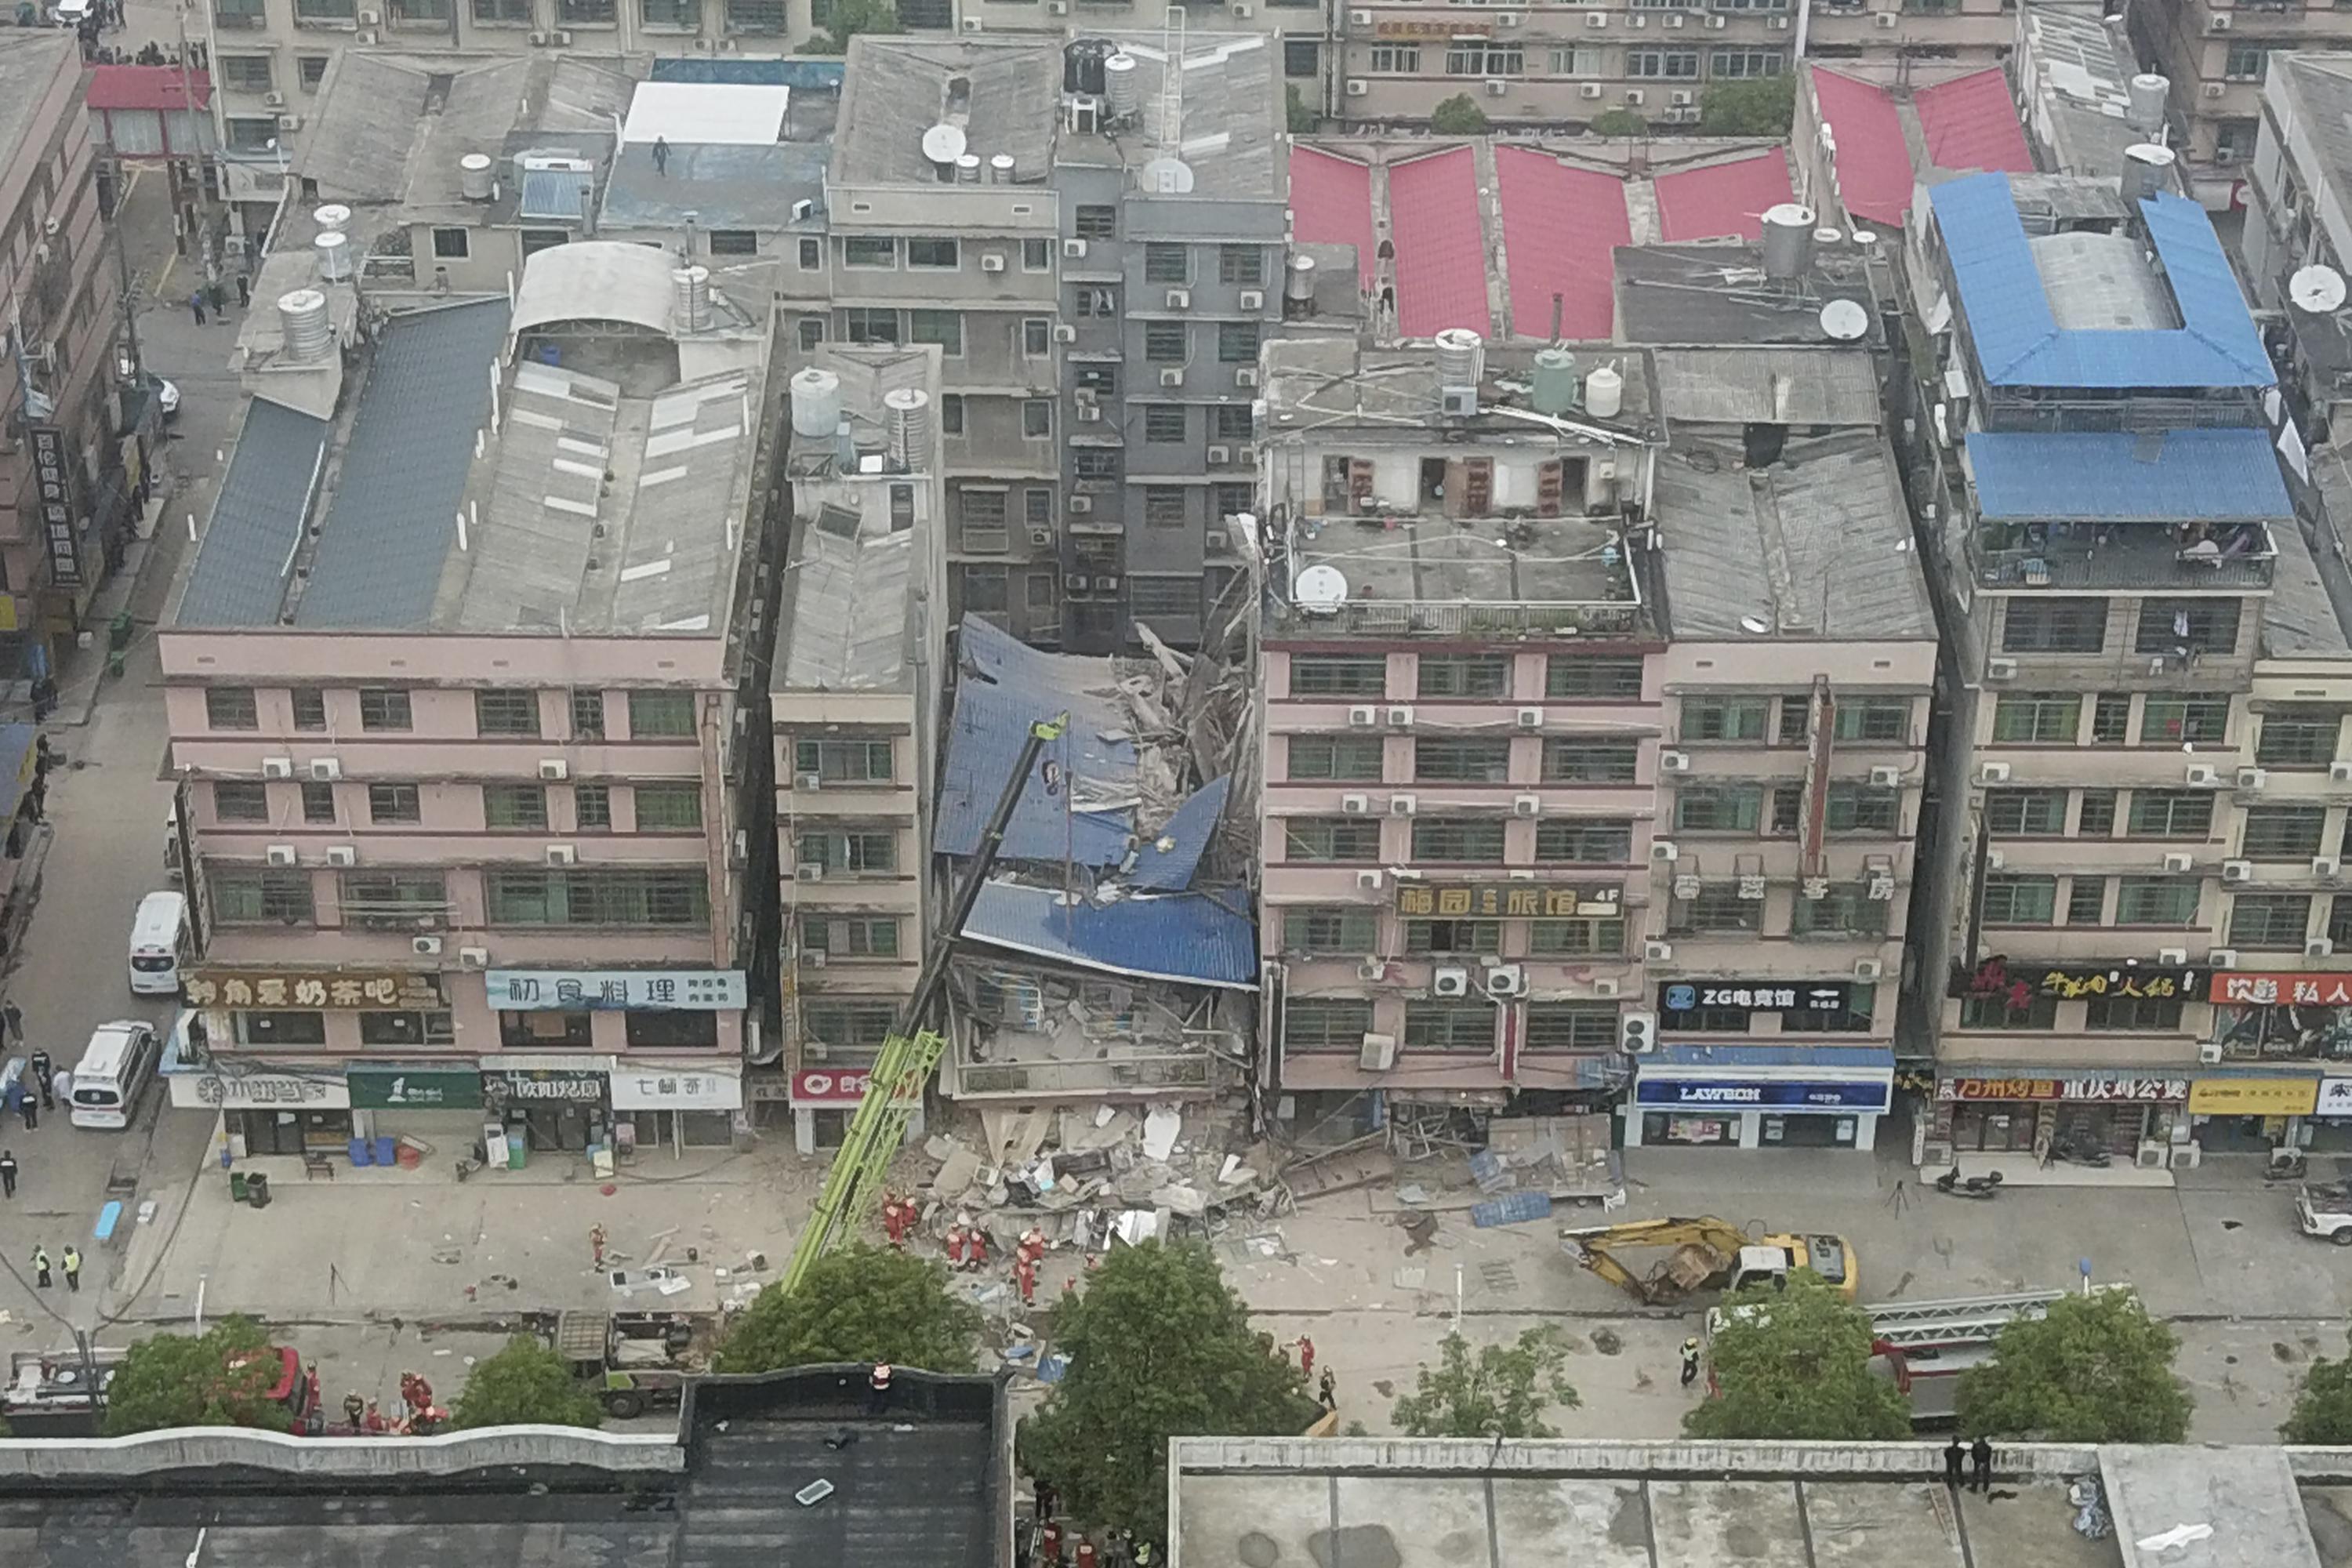 تم إنقاذ المرأة بعد 50 ساعة من انهيار مبنى في الصين